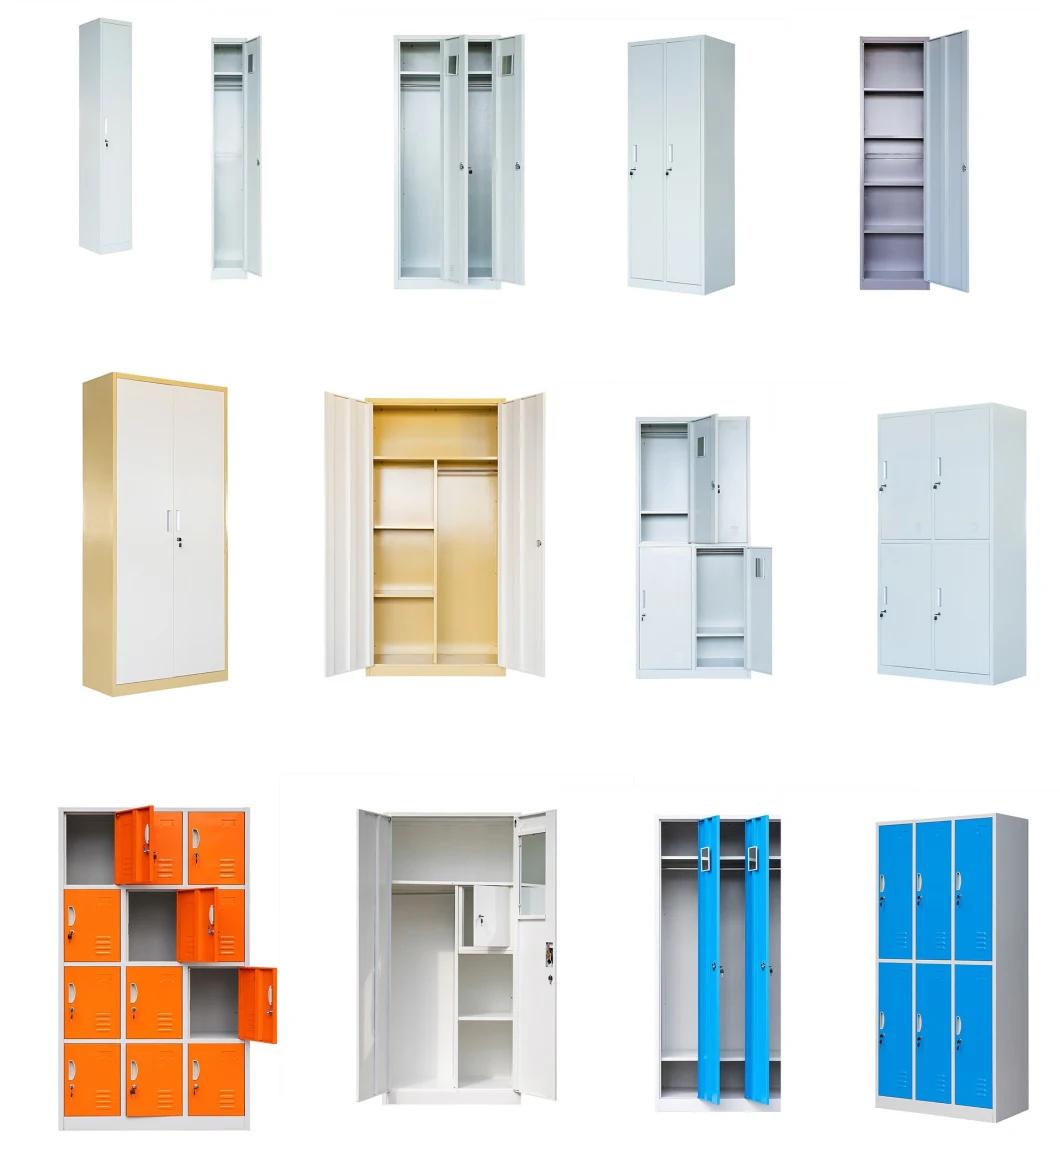 Gray 2 Door Steel Bedroom Wardrobe Design Metal Almirah Cabinet